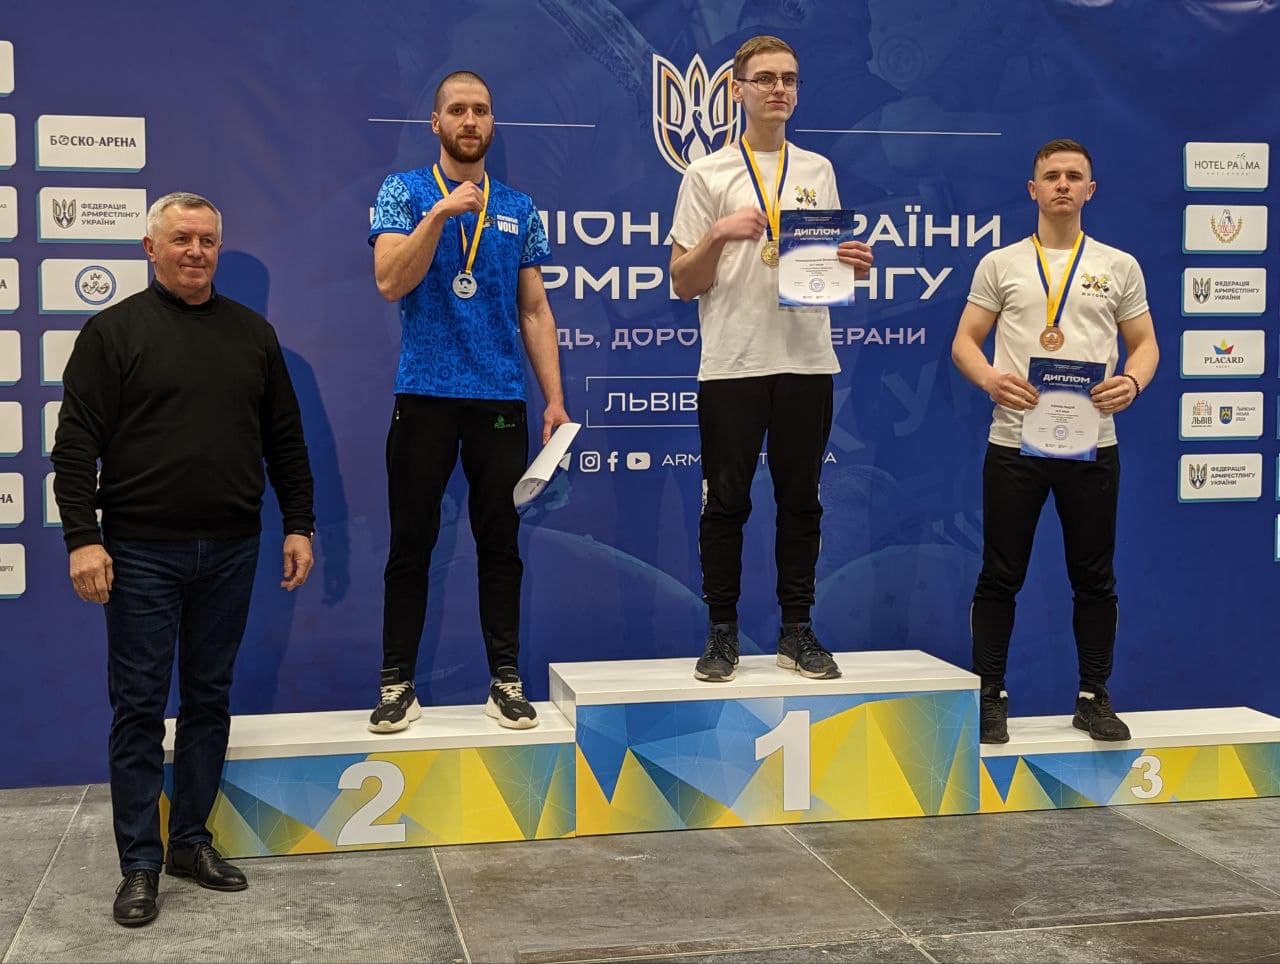 Студент політехніки Володимир Литвин став срібним призером Чемпіонату України з армреслінгу серед молоді, дорослих та ветеранів 